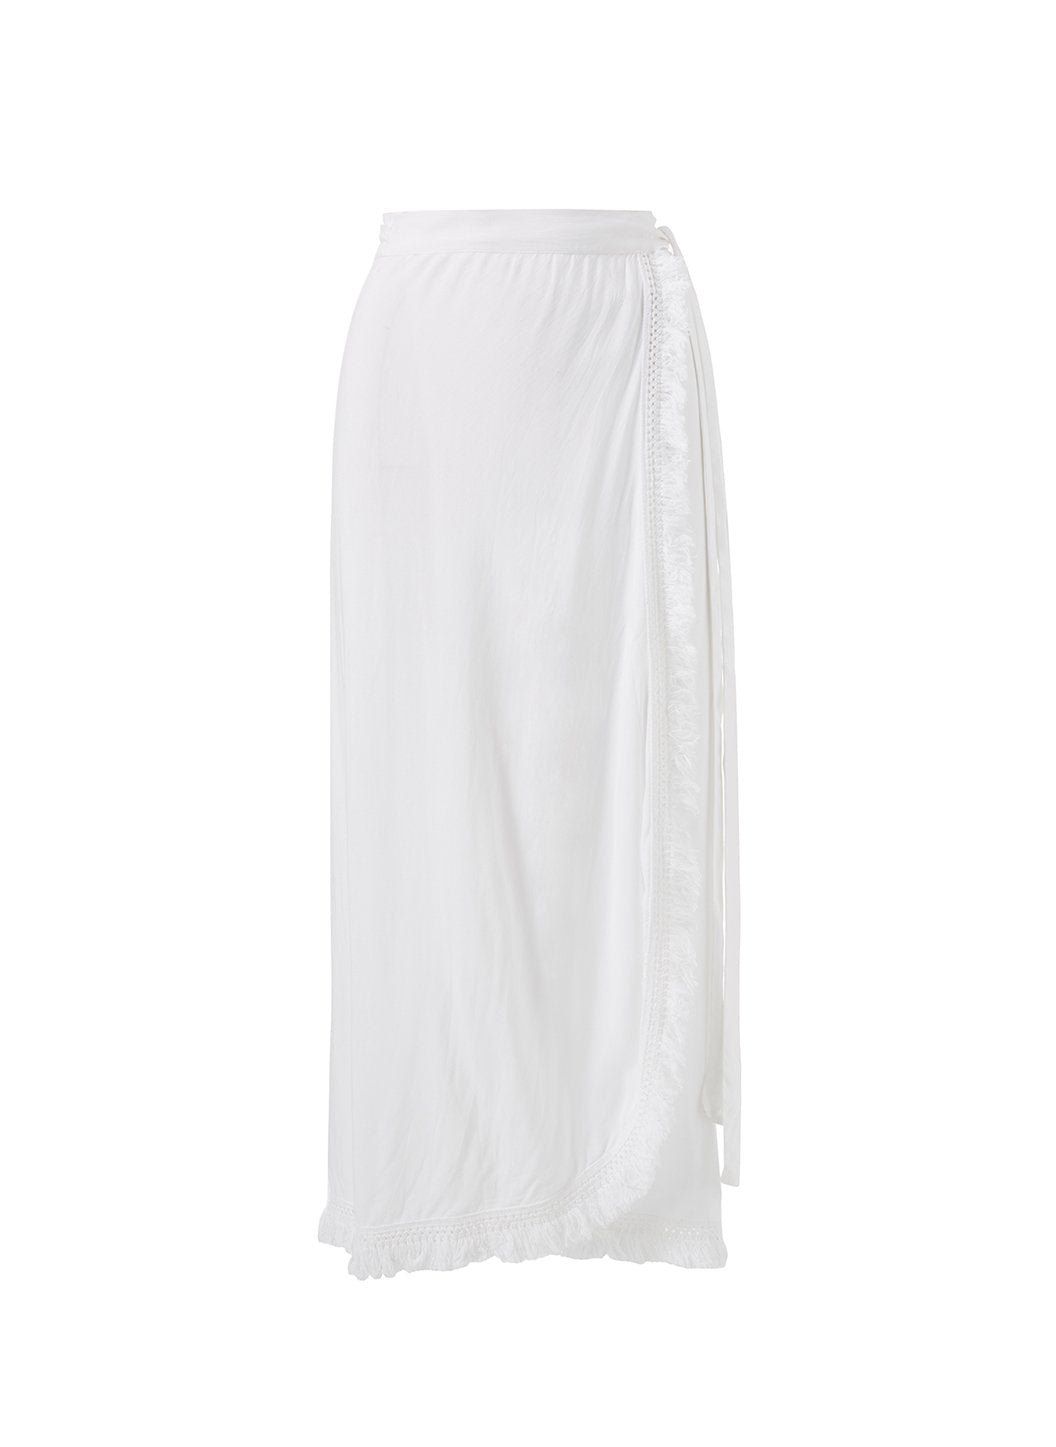 lily-white-tassel-wrap-skirt_9c4320a2-22db-4032-b988-e622d6e6ec28